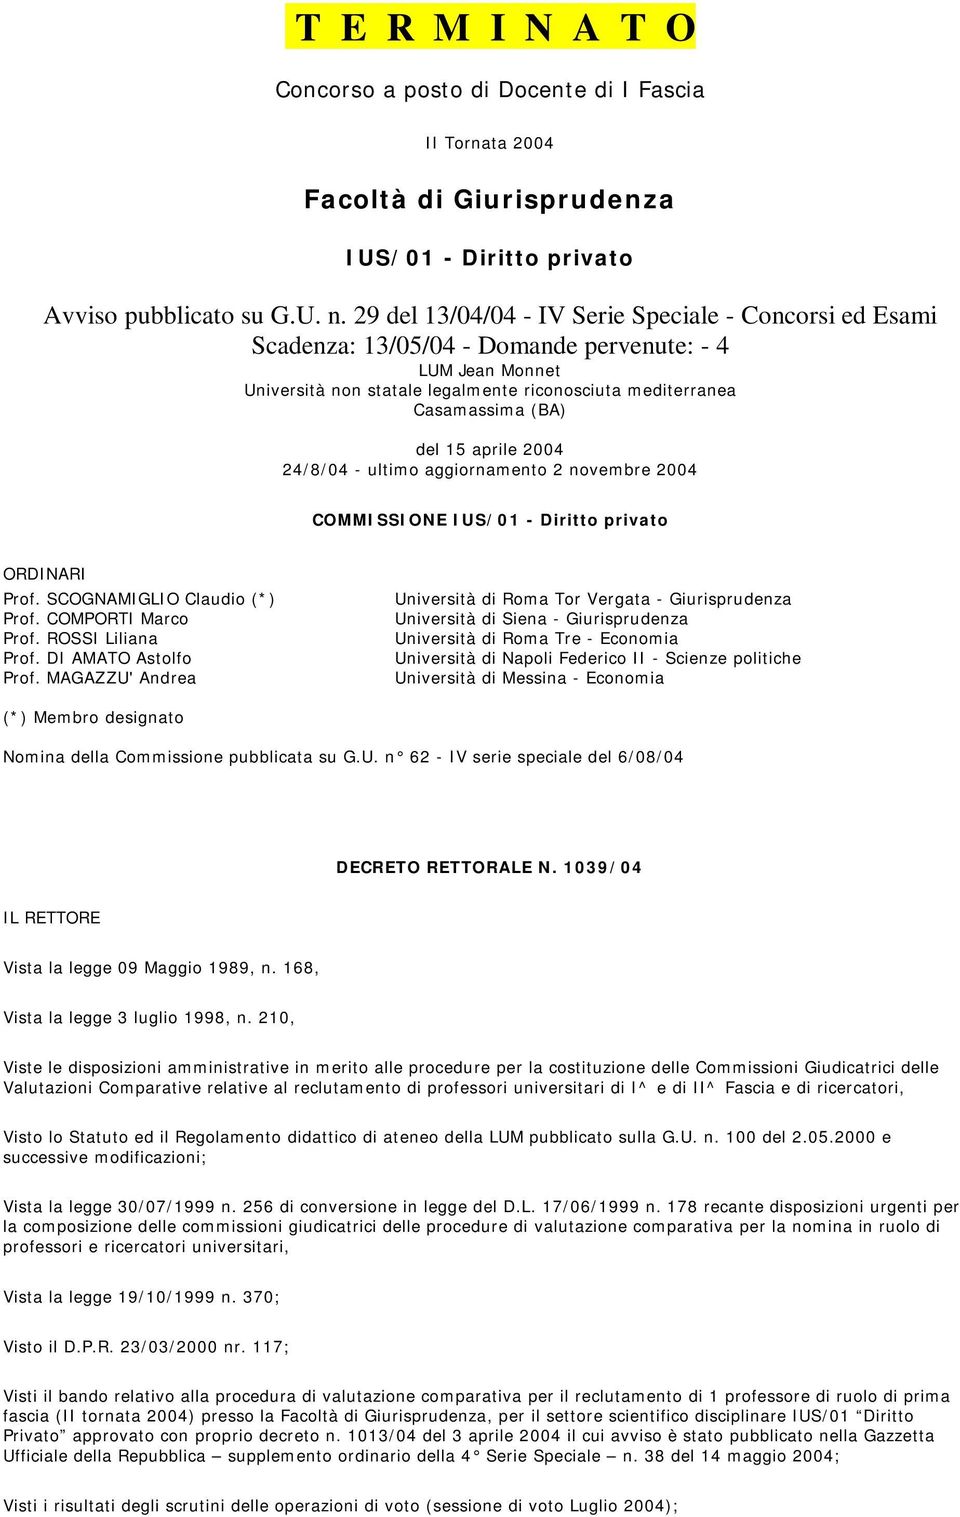 aprile 2004 24/8/04 - ultimo aggiornamento 2 novembre 2004 COMMISSIONE IUS/01 - Diritto privato ORDINARI Prof. SCOGNAMIGLIO Claudio (*) Prof. COMPORTI Marco Prof. ROSSI Liliana Prof.